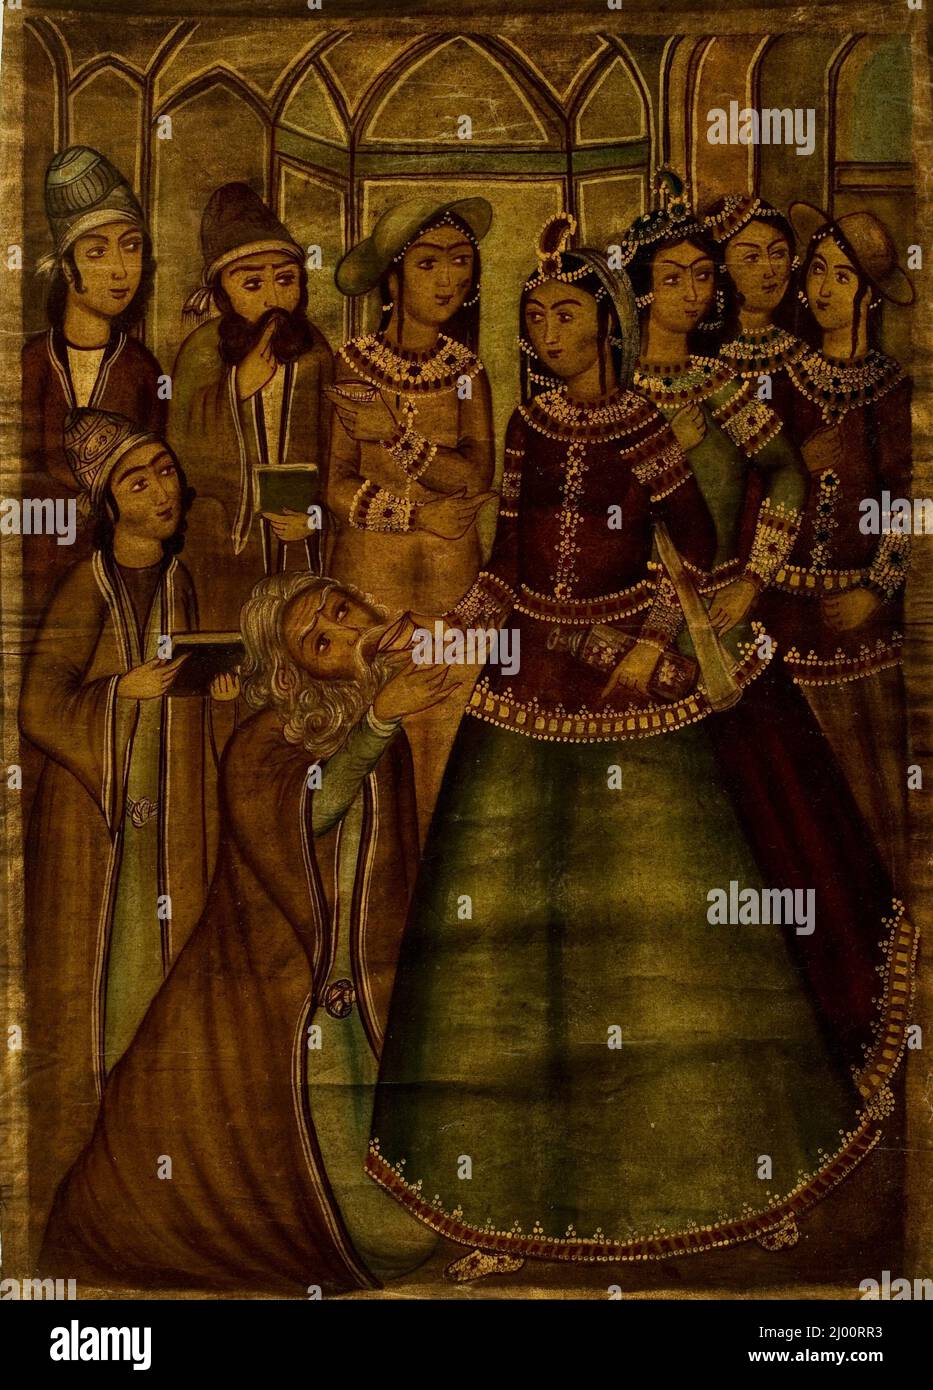 Shaykh Sanan et la jeune fille chrétienne. Iran, dynastie Qajar, début 19th siècle/vers 13th siècle A.H.. Peintures. Huile sur toile Banque D'Images